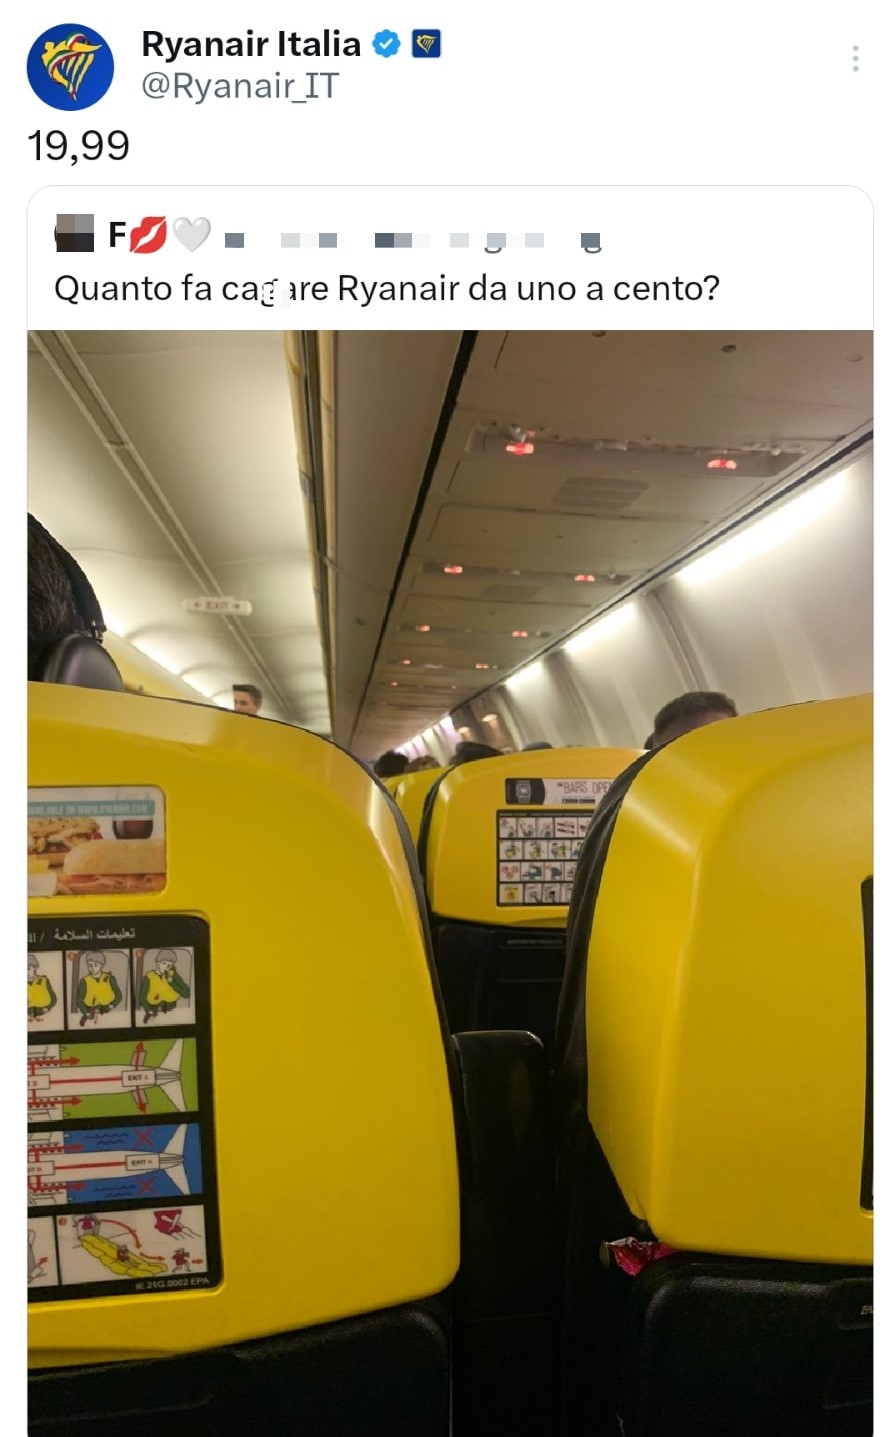 L'offesa della ragazza italiana e la risposta di Ryanair. Fonte: ryanair_IT - Twitter